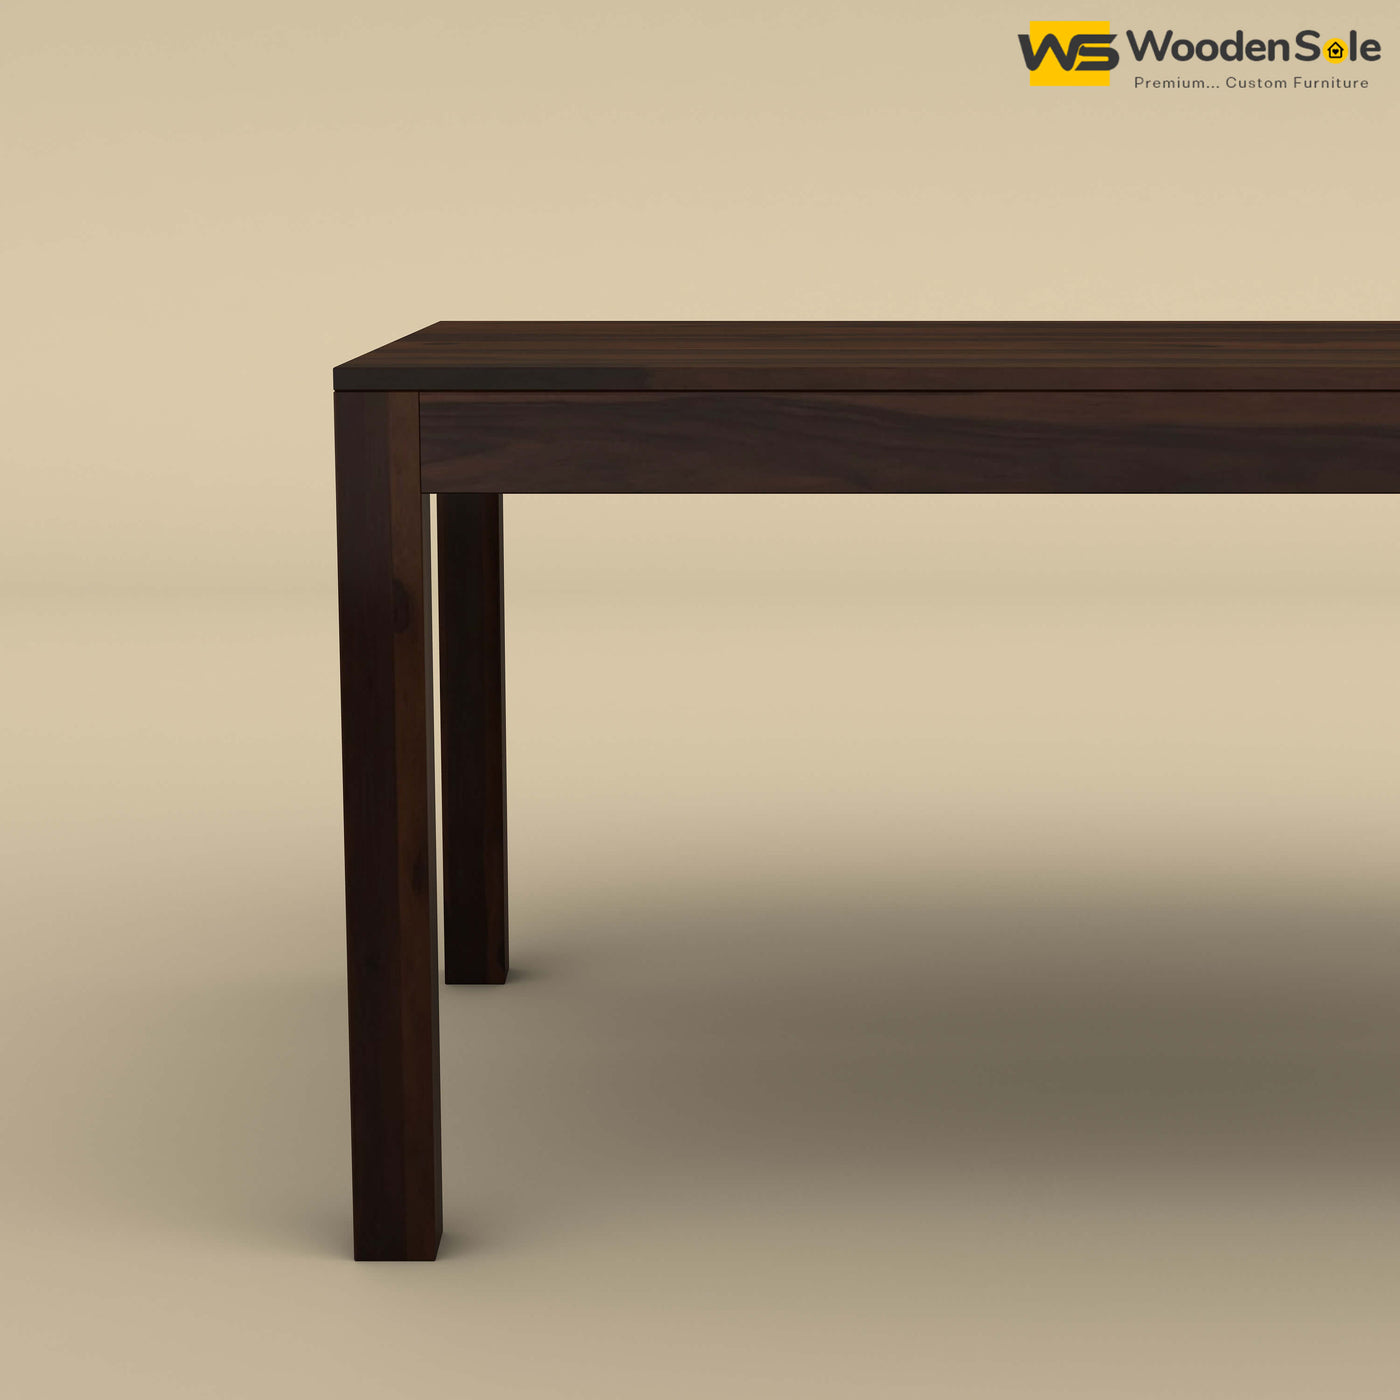 Sheesham Wood 6 Seater Dining Table (Walnut Finish)